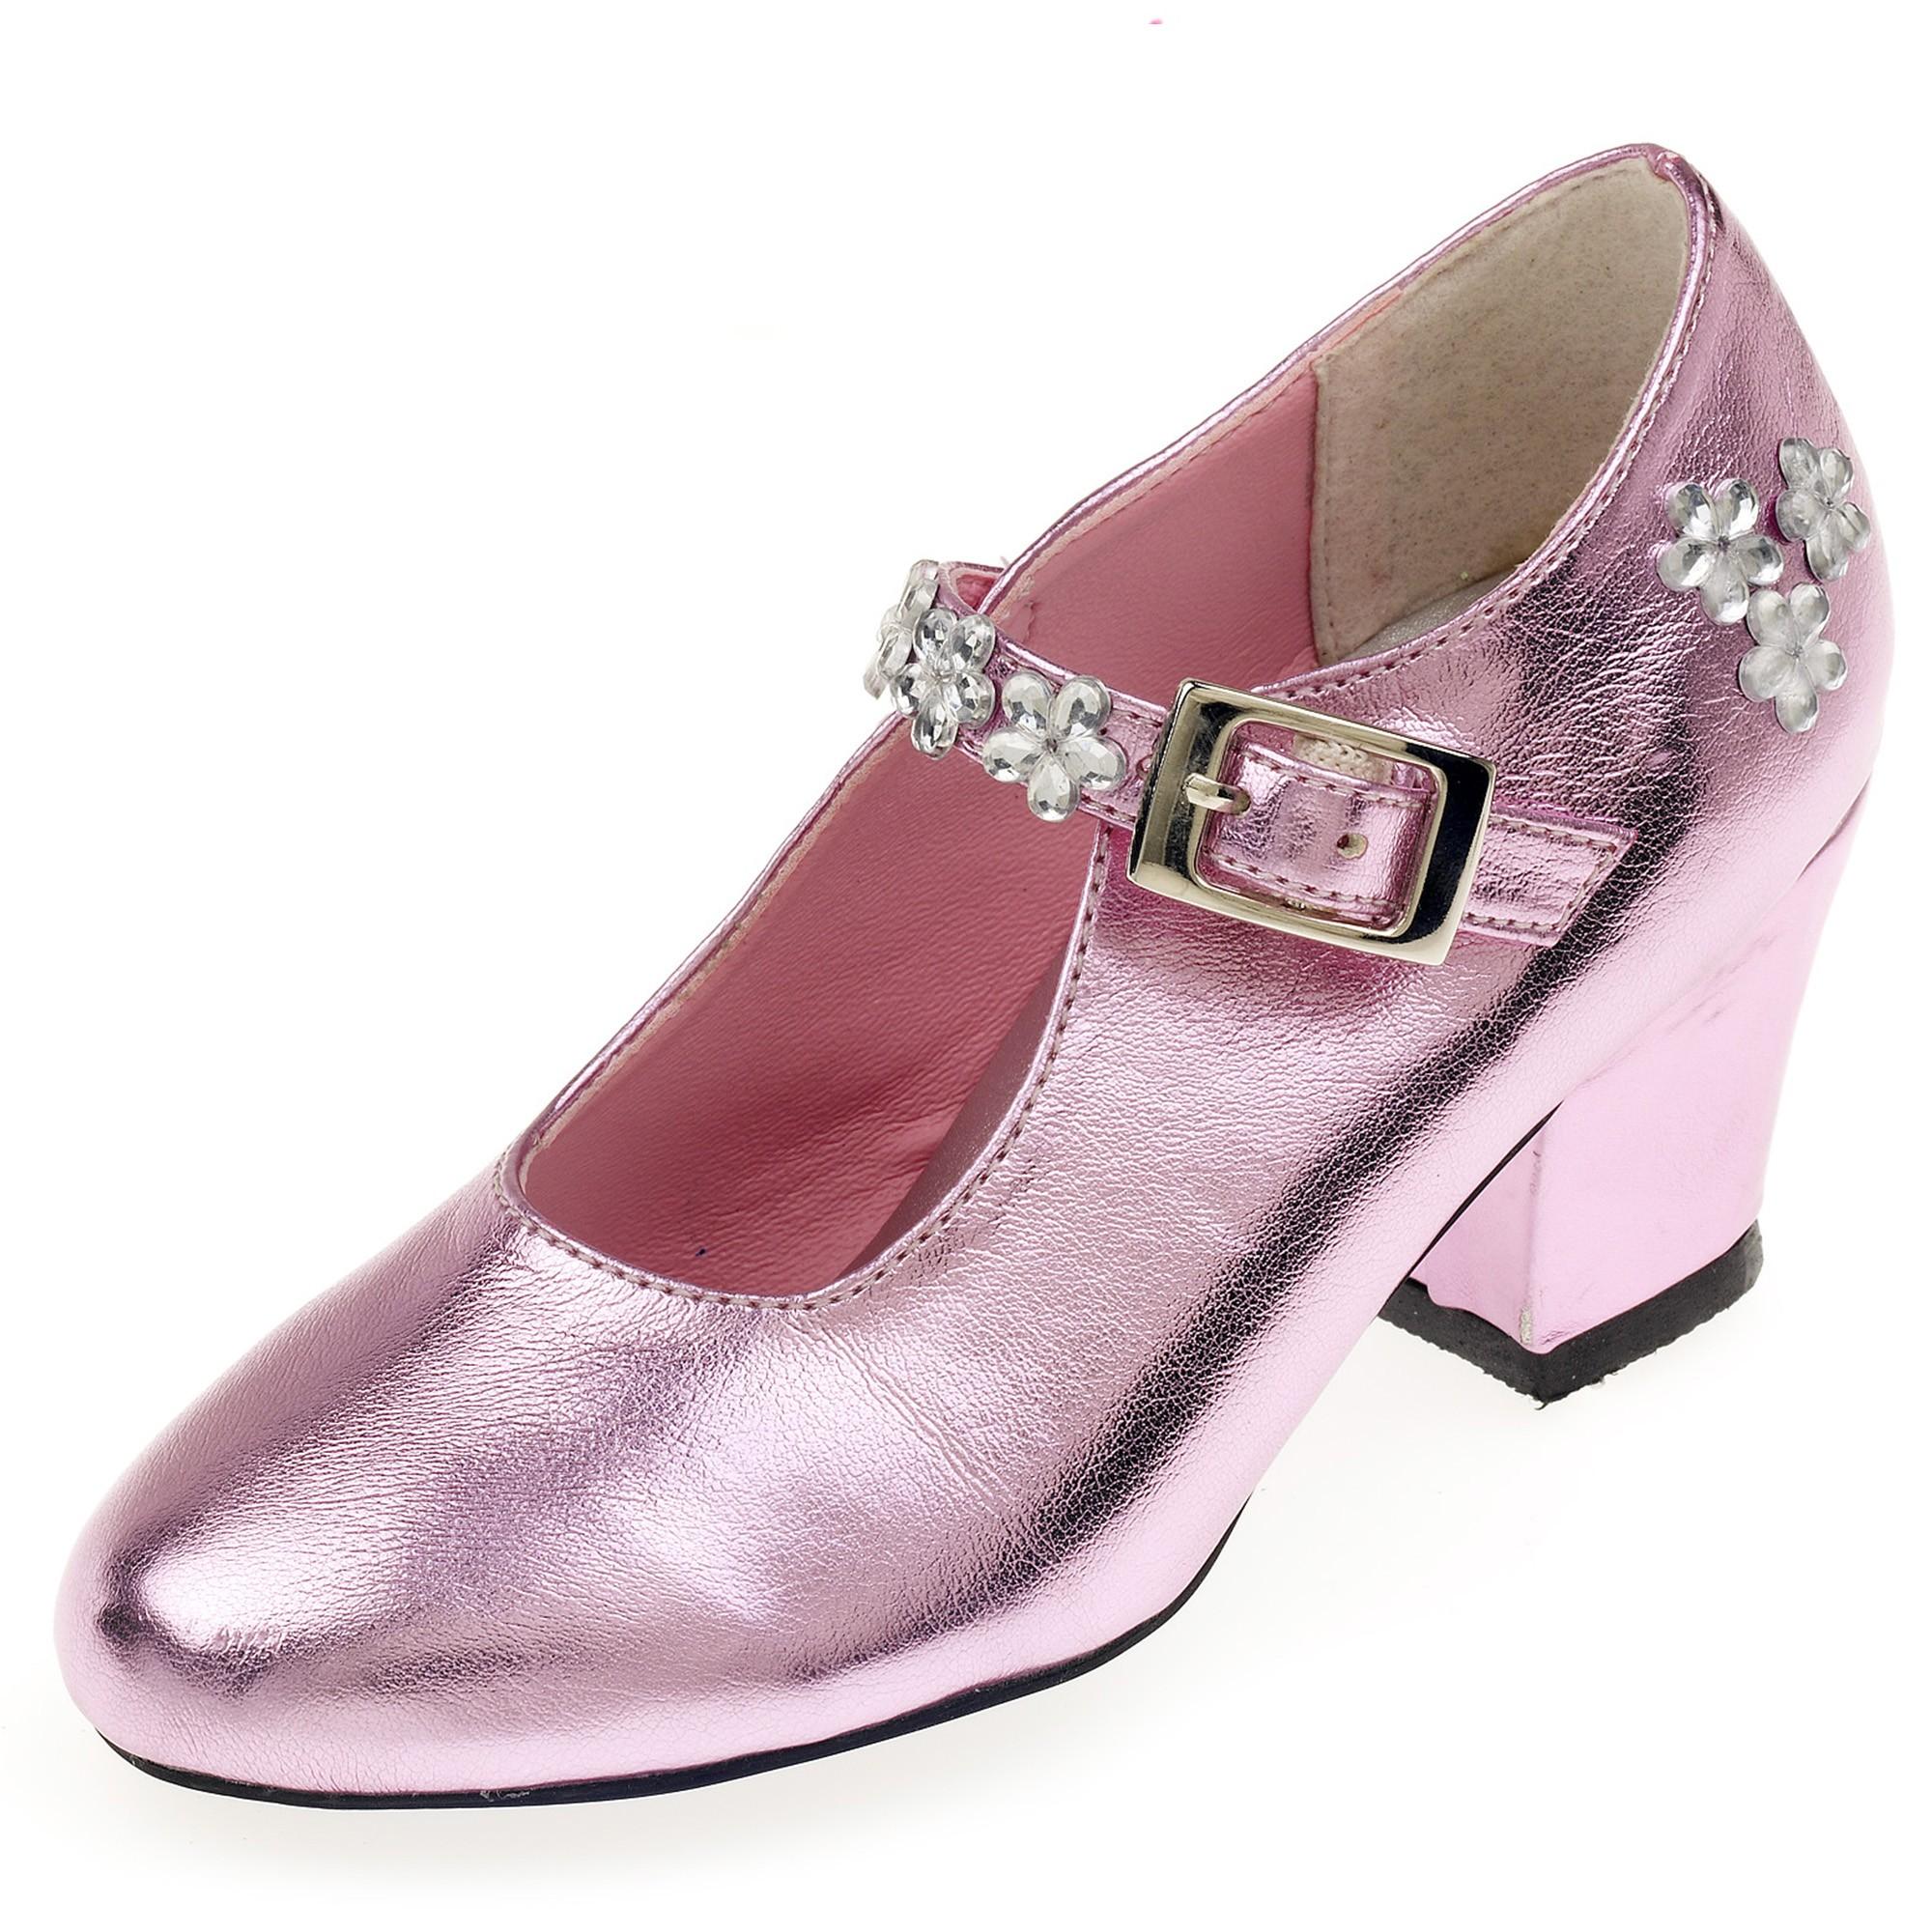 Souza - Schoentjes hoge hak Madeleine, roze metallic, mt 31 (1 paar)